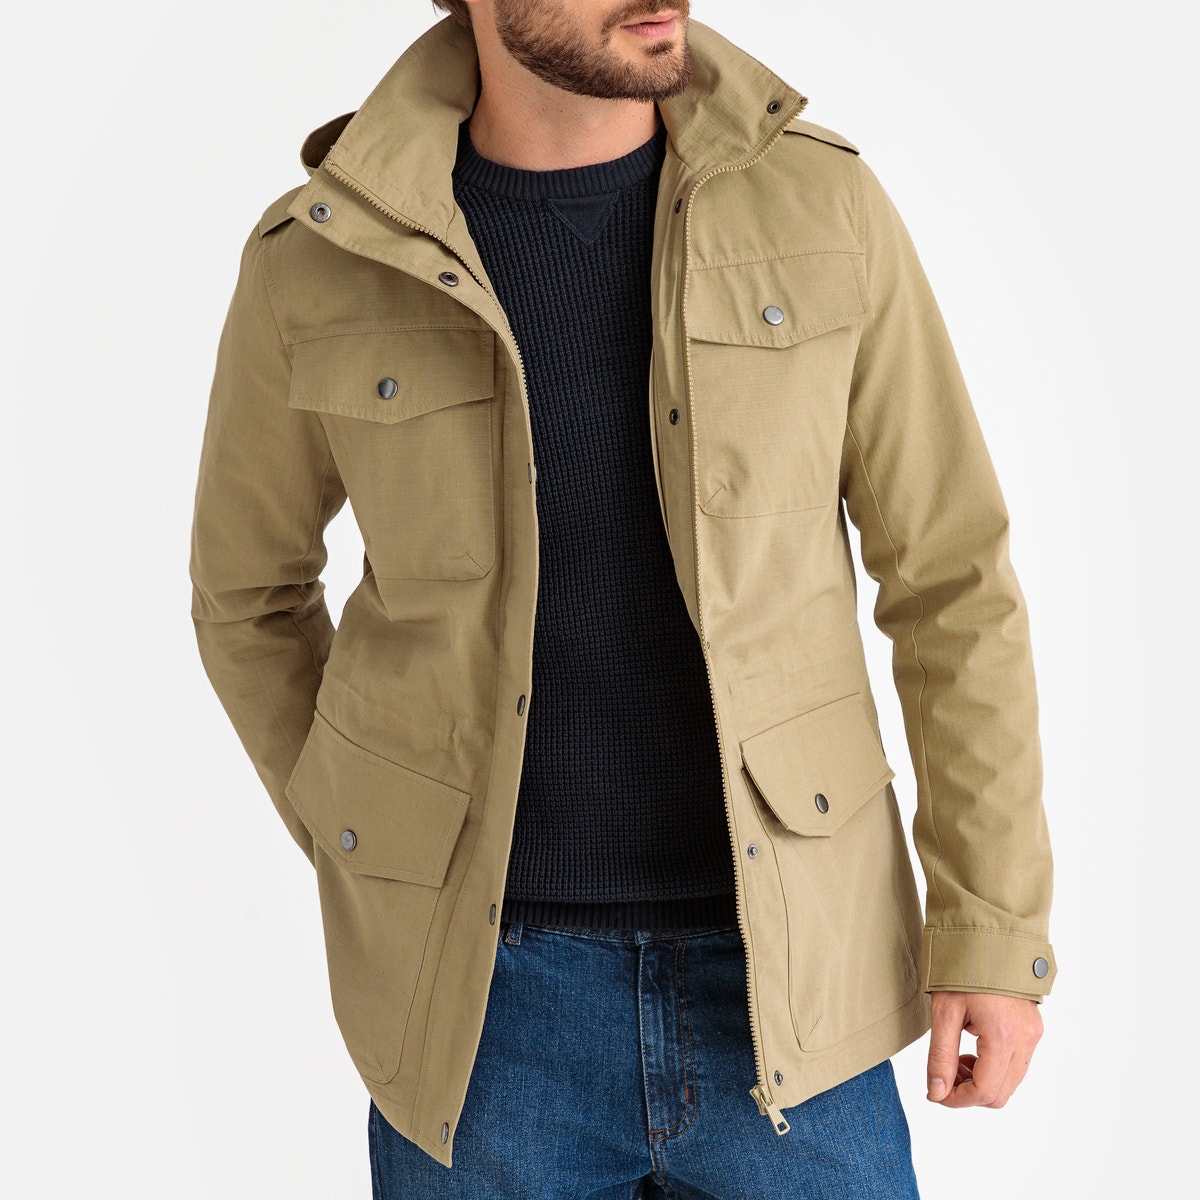 hooded safari jacket.jpg